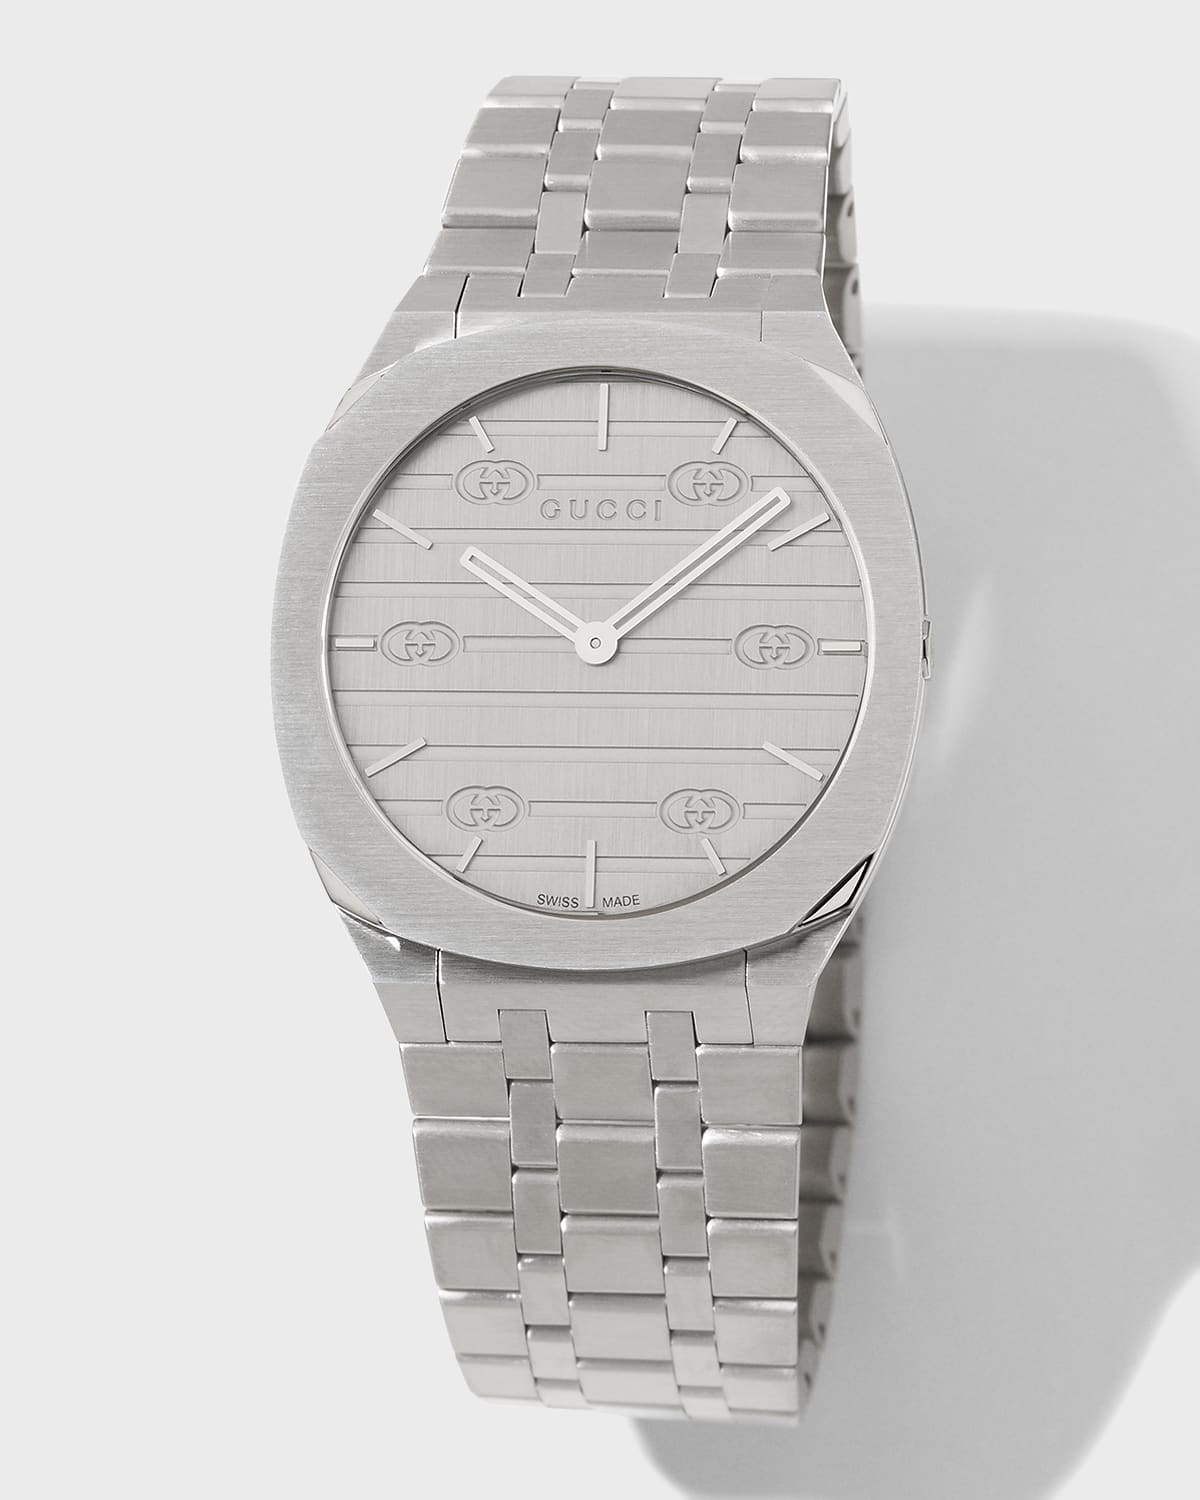 Gucci Men's 34mm Stainless Steel Bracelet Watch